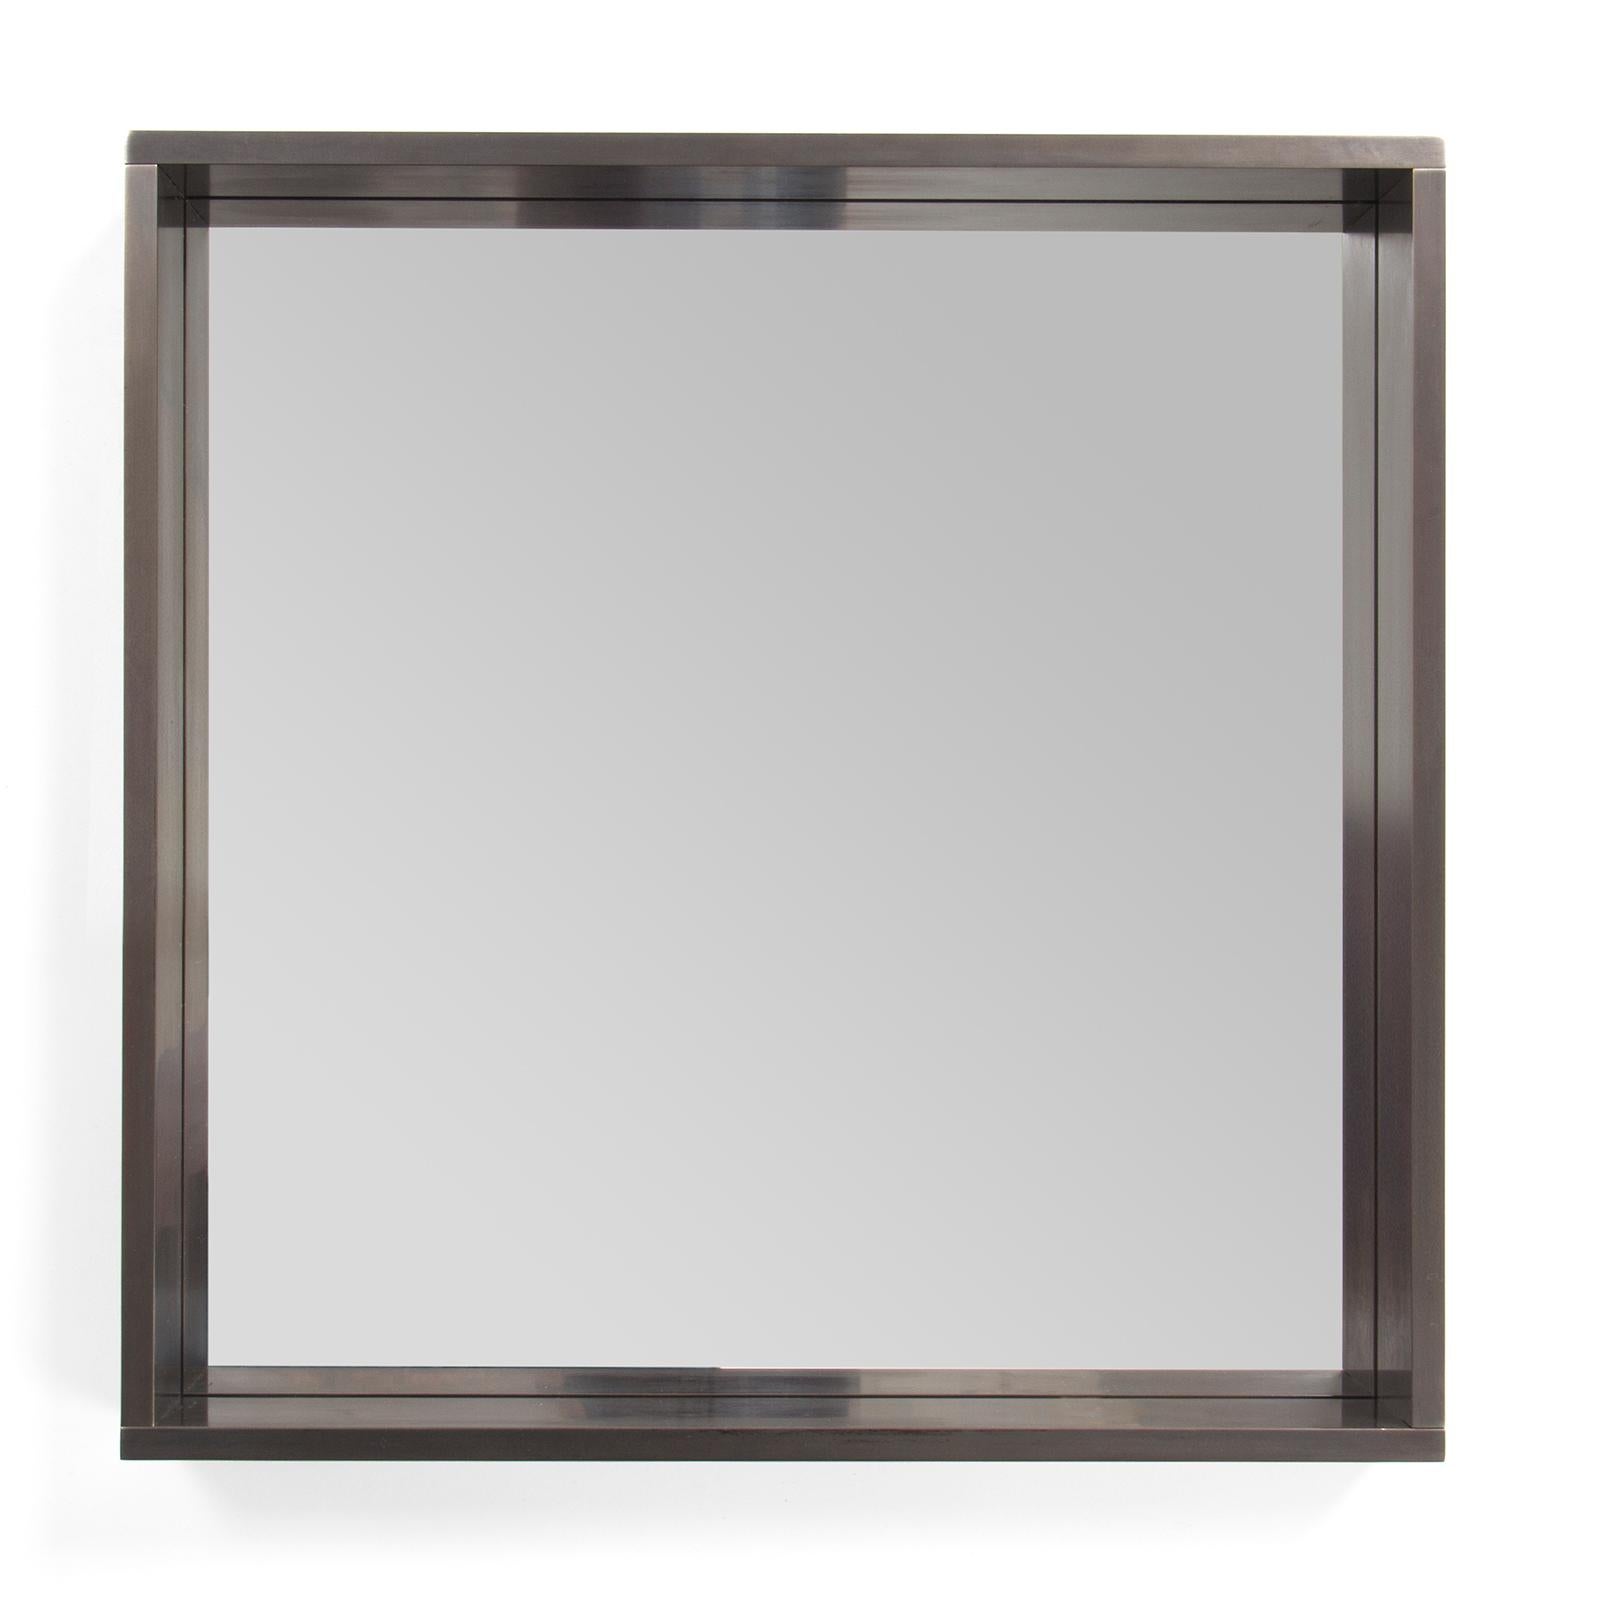 Ein originaler, quadratischer Spiegel von Wyeth mit einem schwalbenschwanzförmigen, geschwärzten Stahlrahmen. Erhältlich in kundenspezifischen Größen.